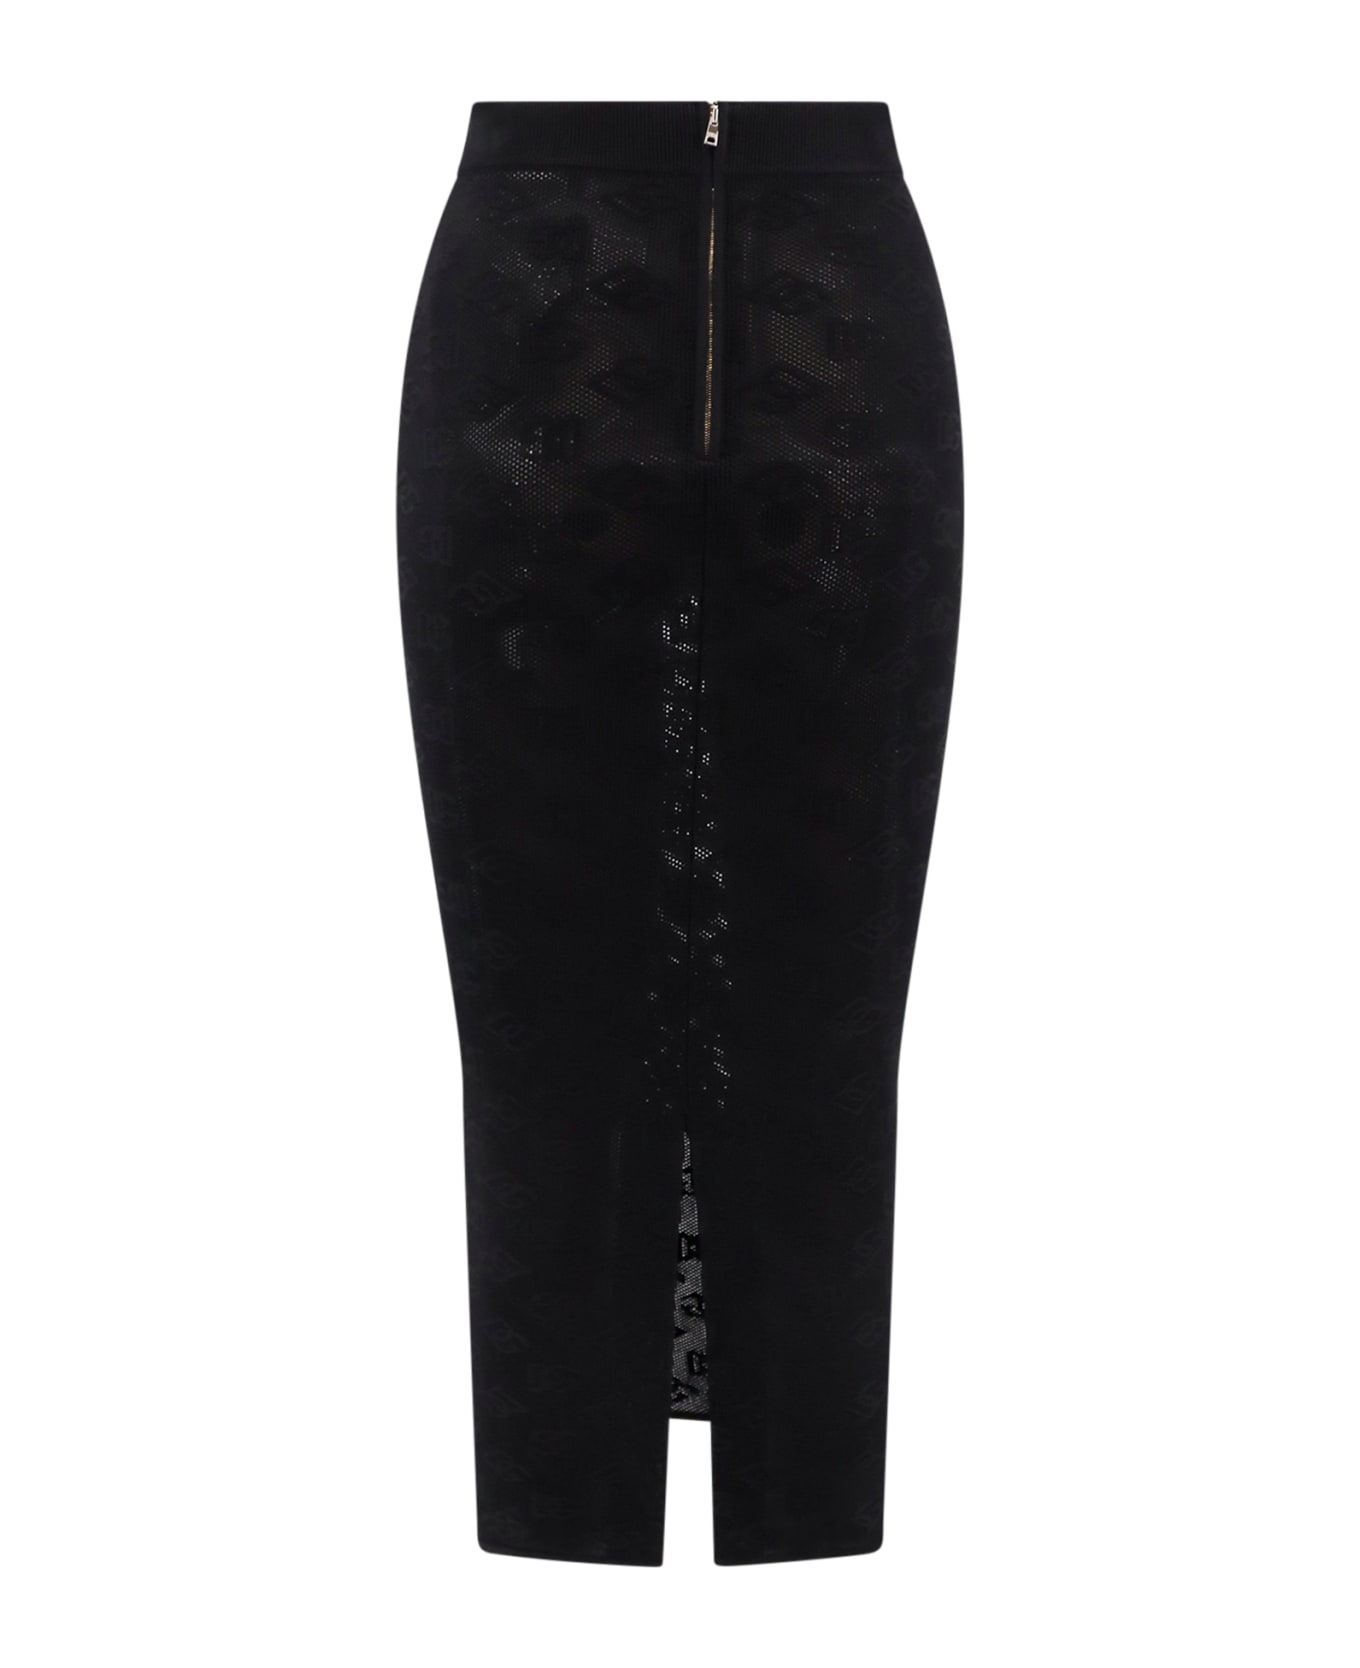 Dolce & Gabbana Dg Skirt - Black スカート